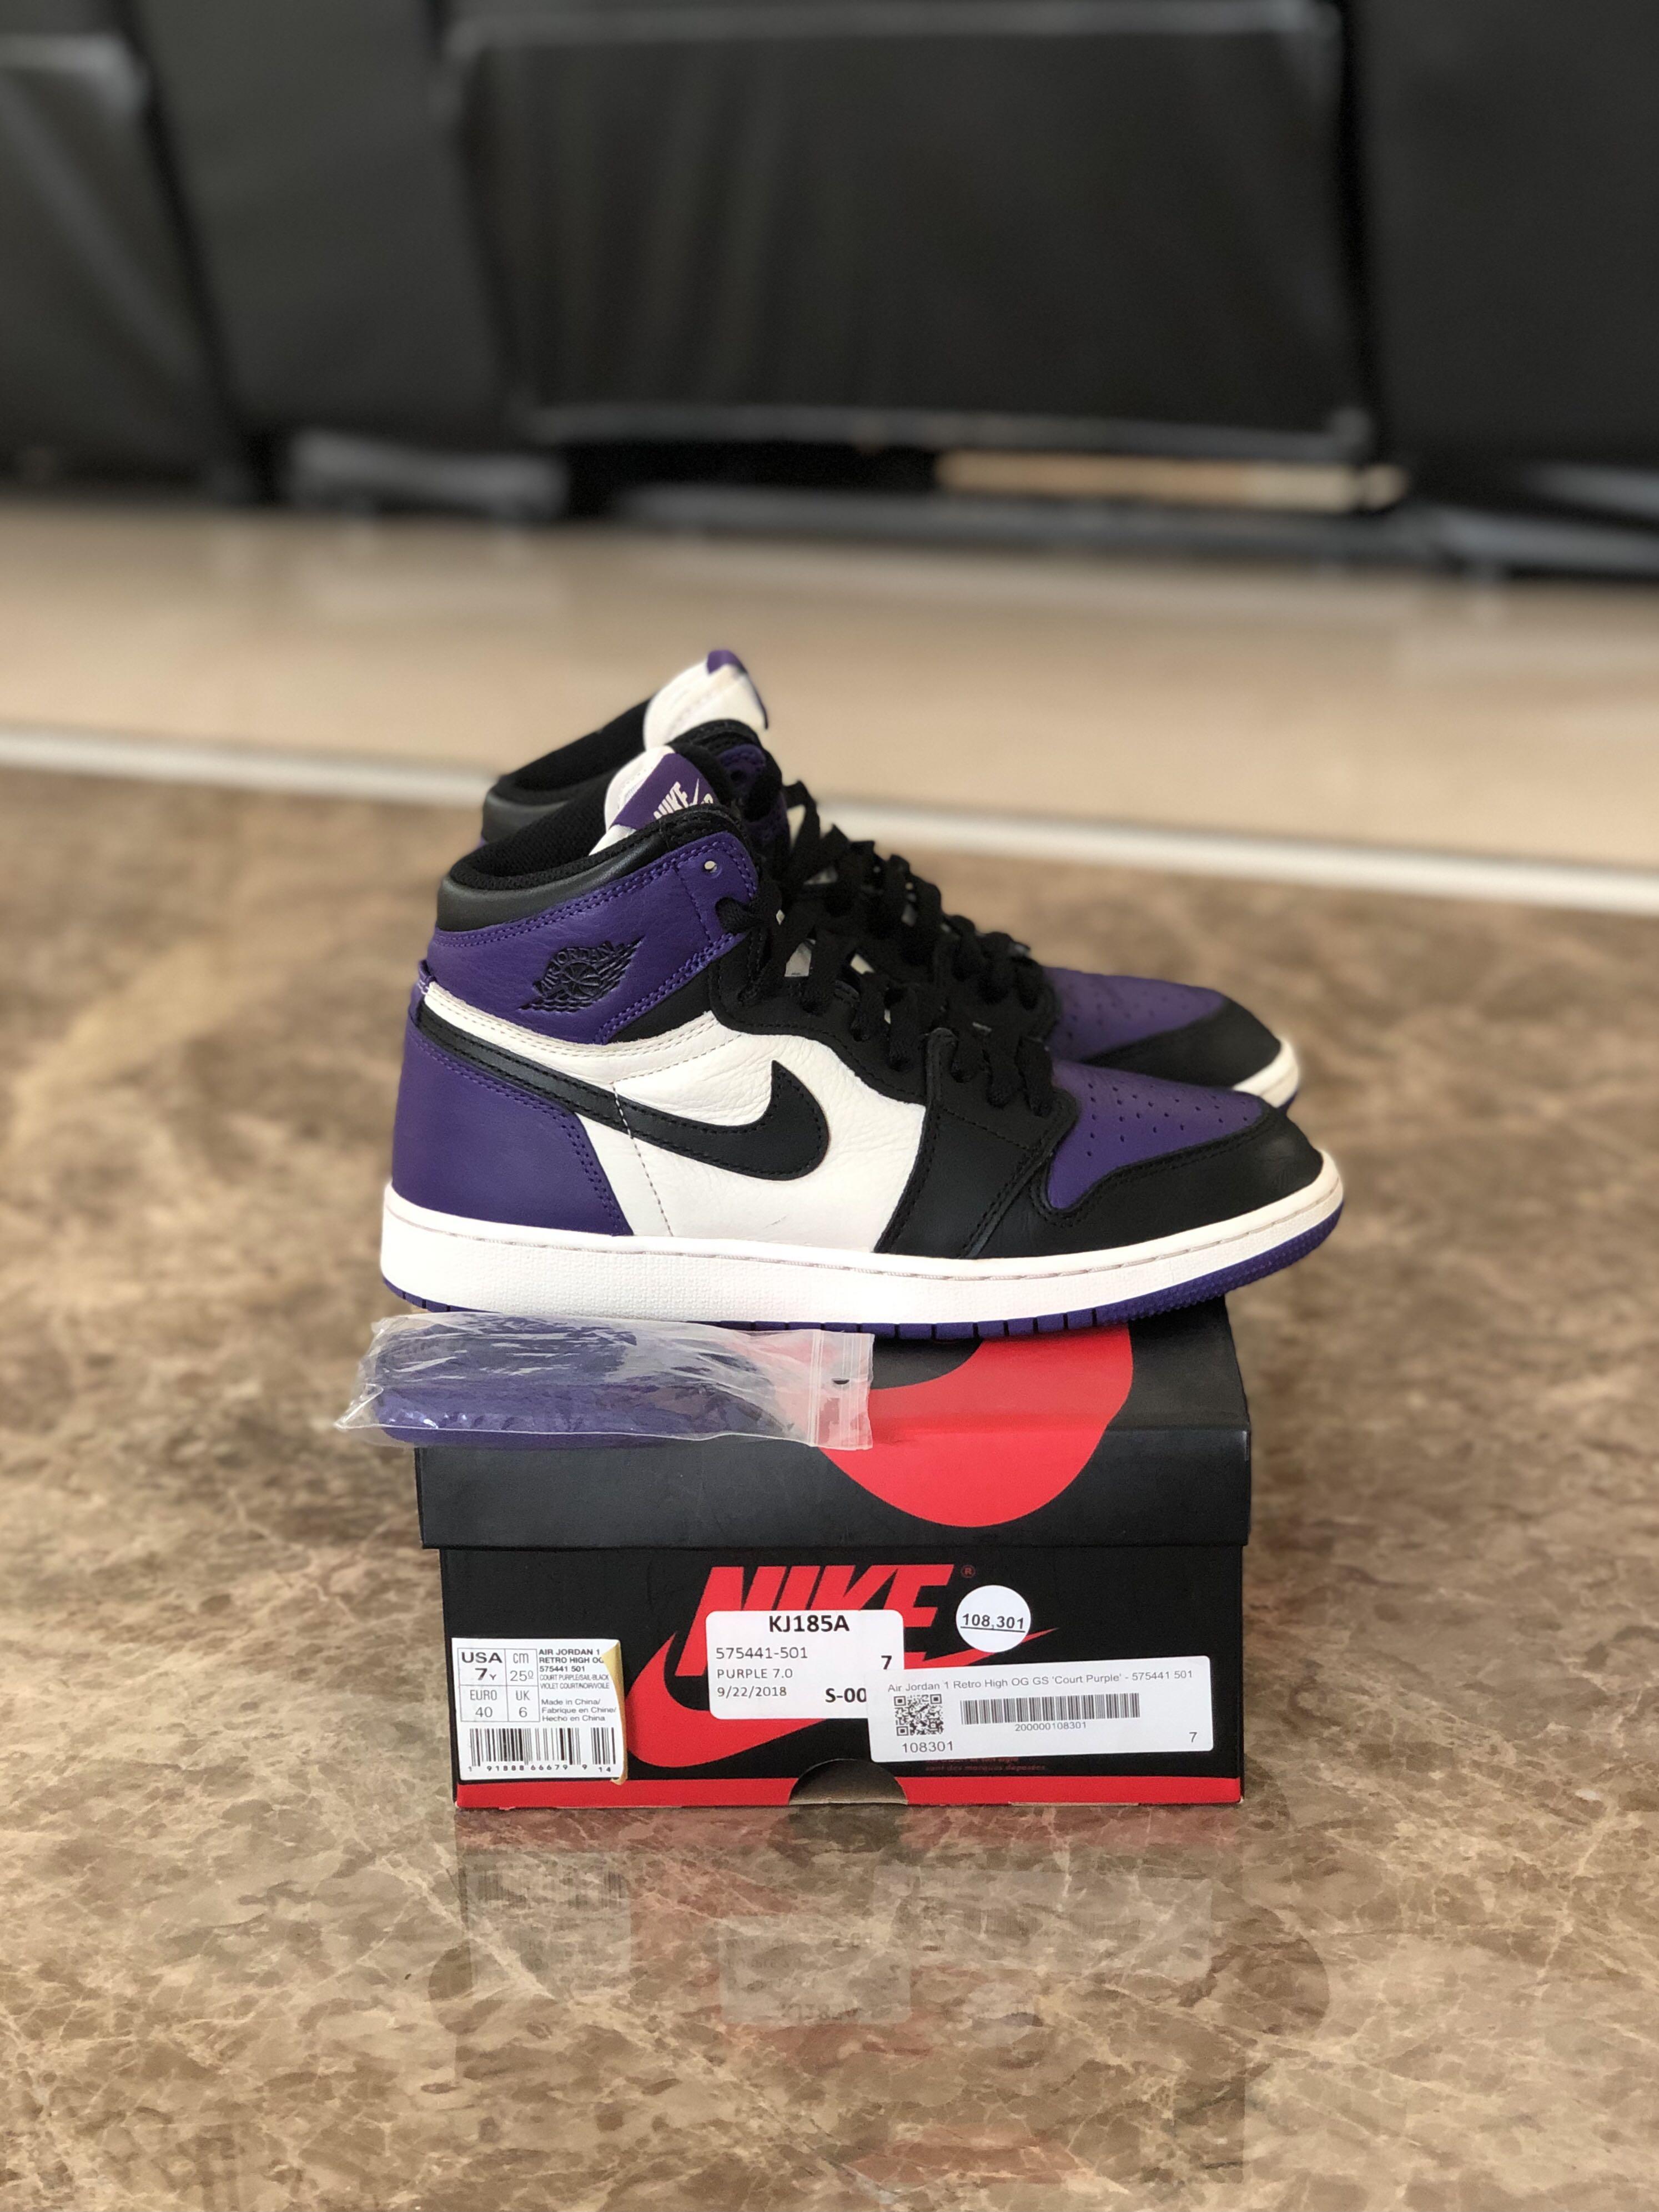 jordan 1 court purple used